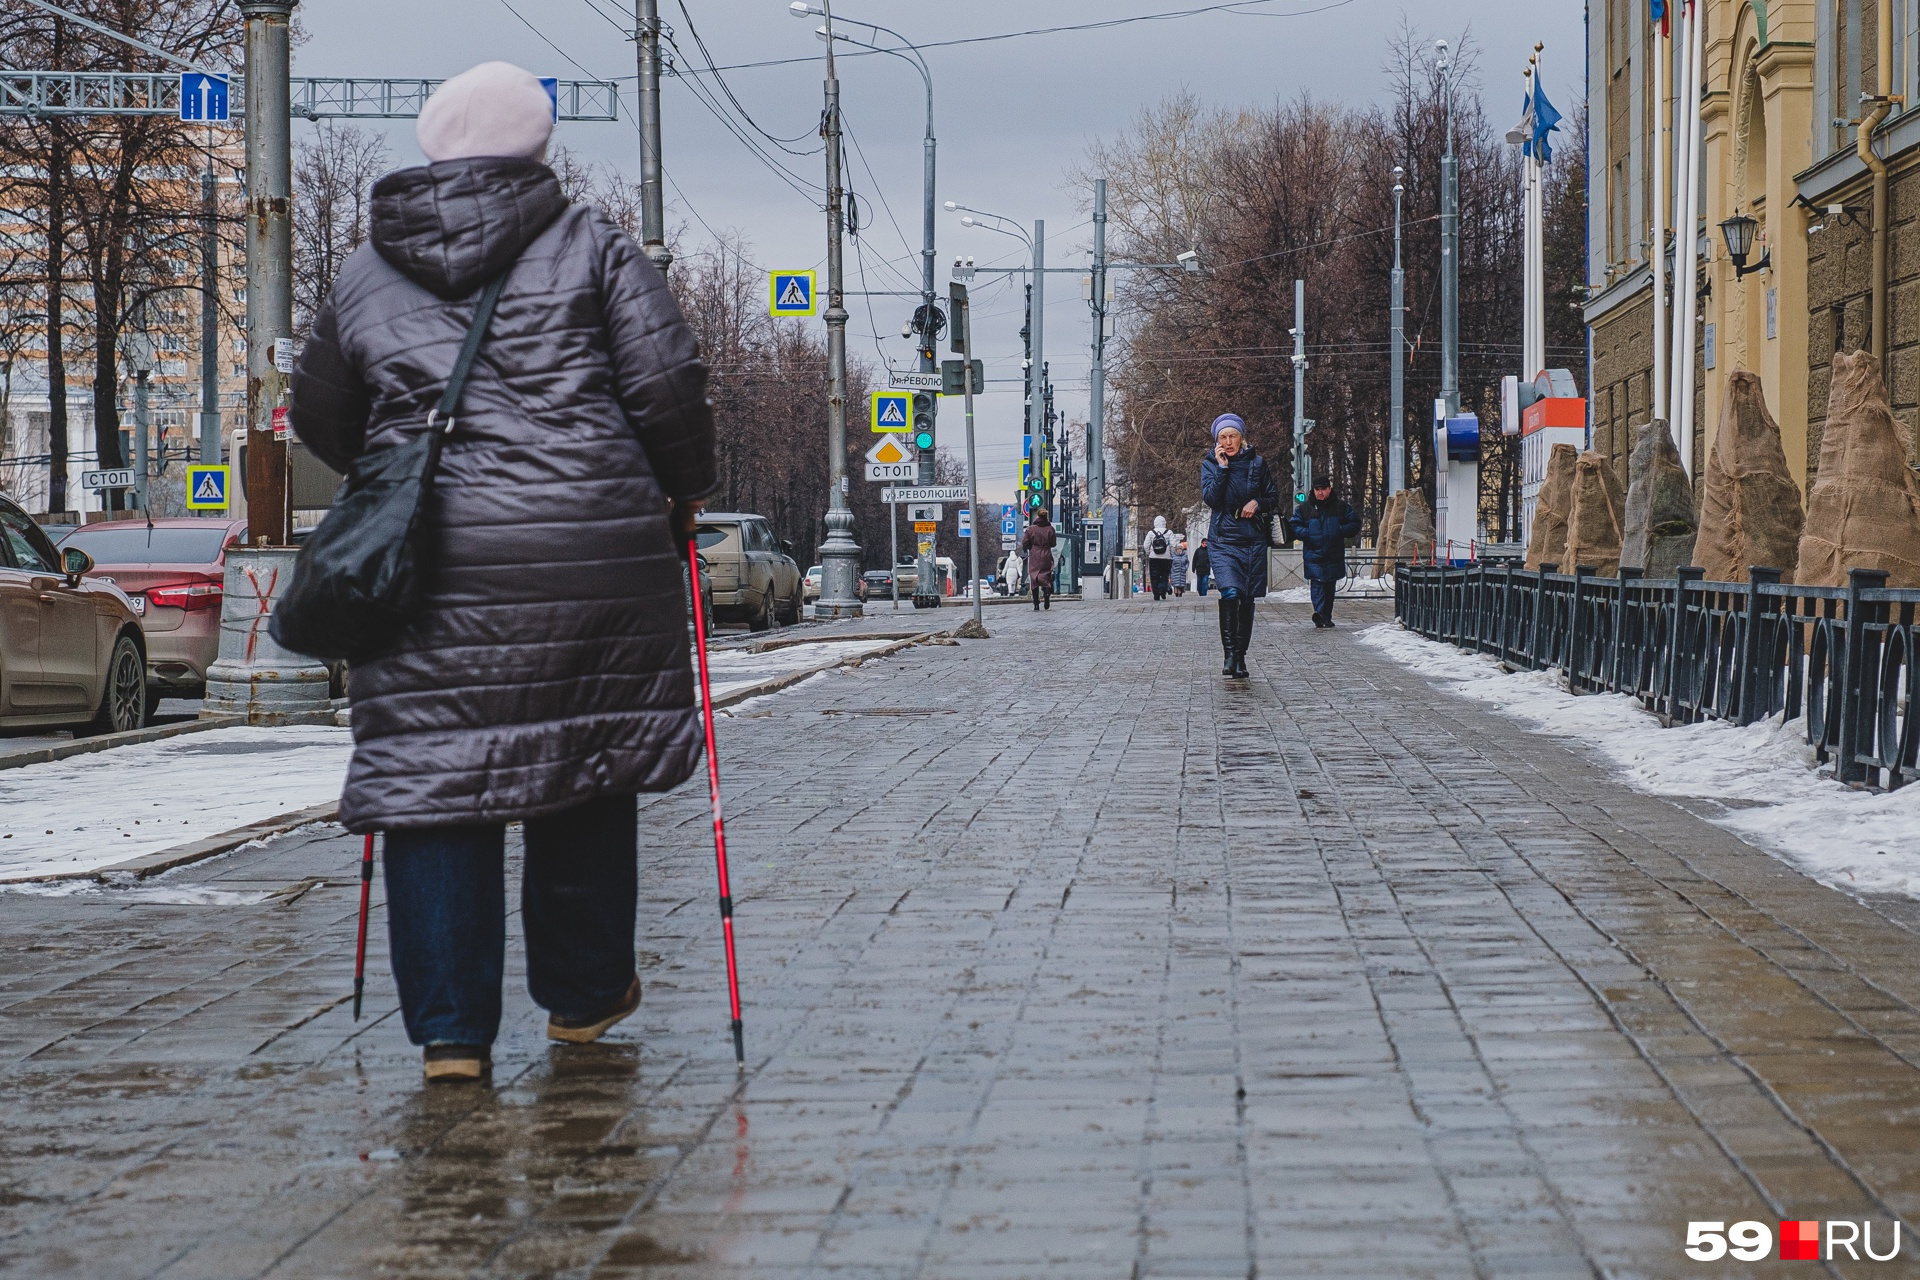 Гололедица может образоваться вследствие ледяного дождя или обычного дождя, замерзших луж на тротуарах или дороге